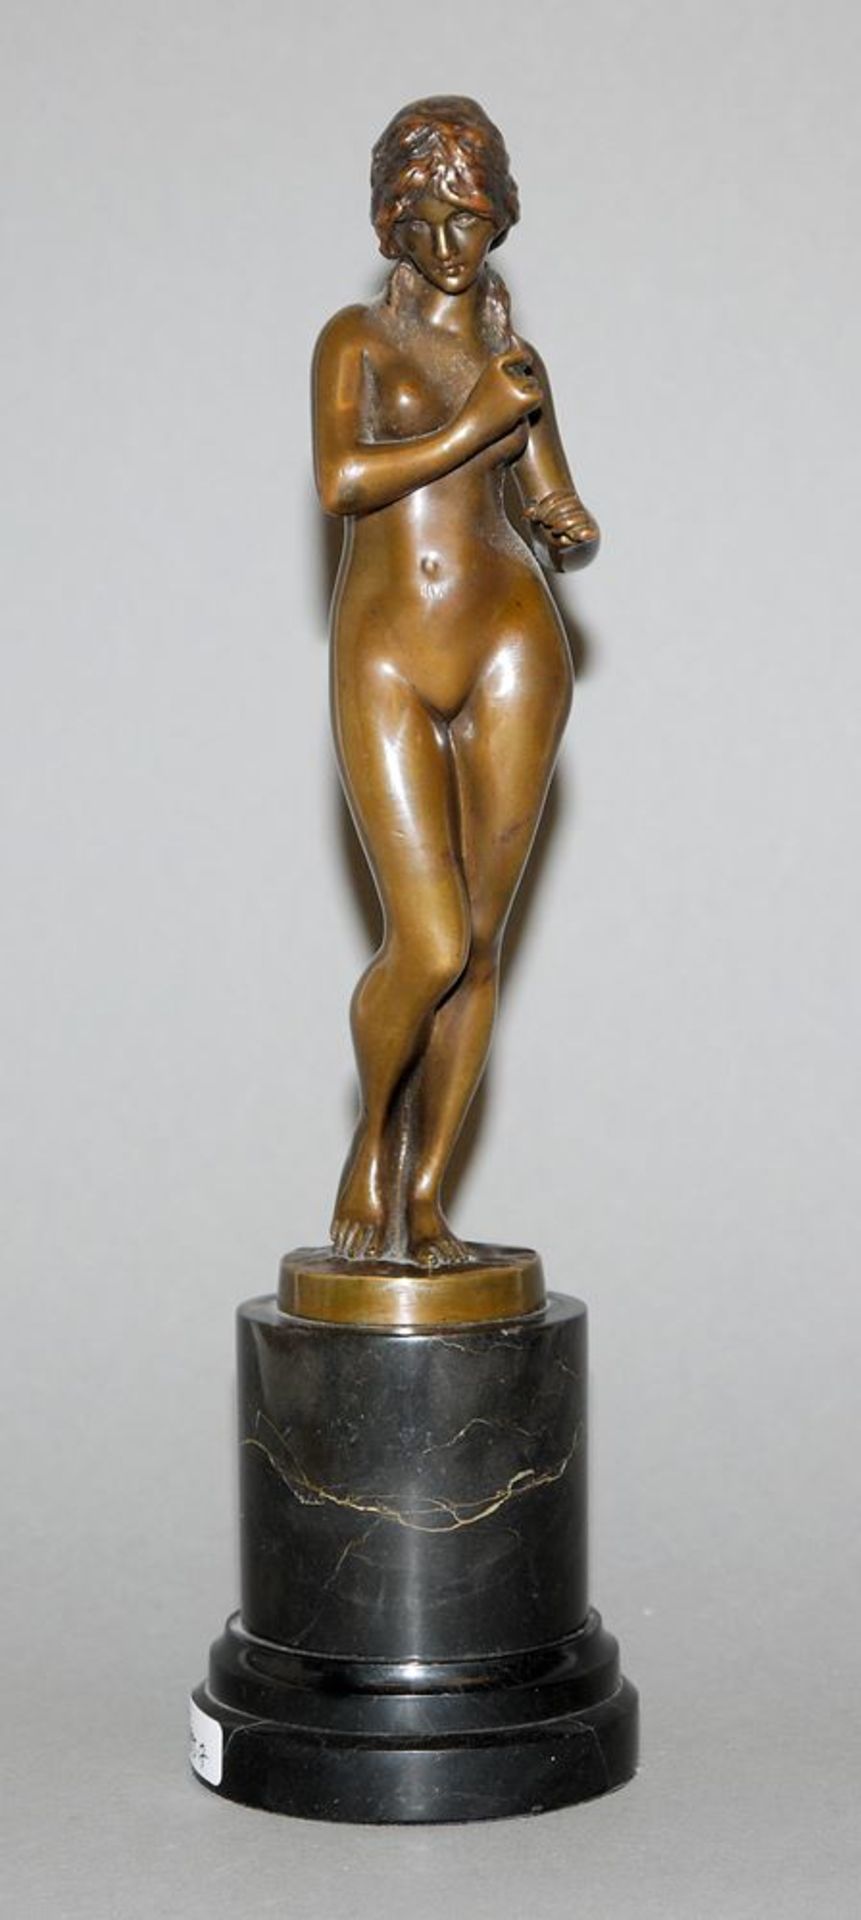 Bildhauer des Jugendstils, weiblicher Akt, Bronzeplastik Gladenbeck um 1900